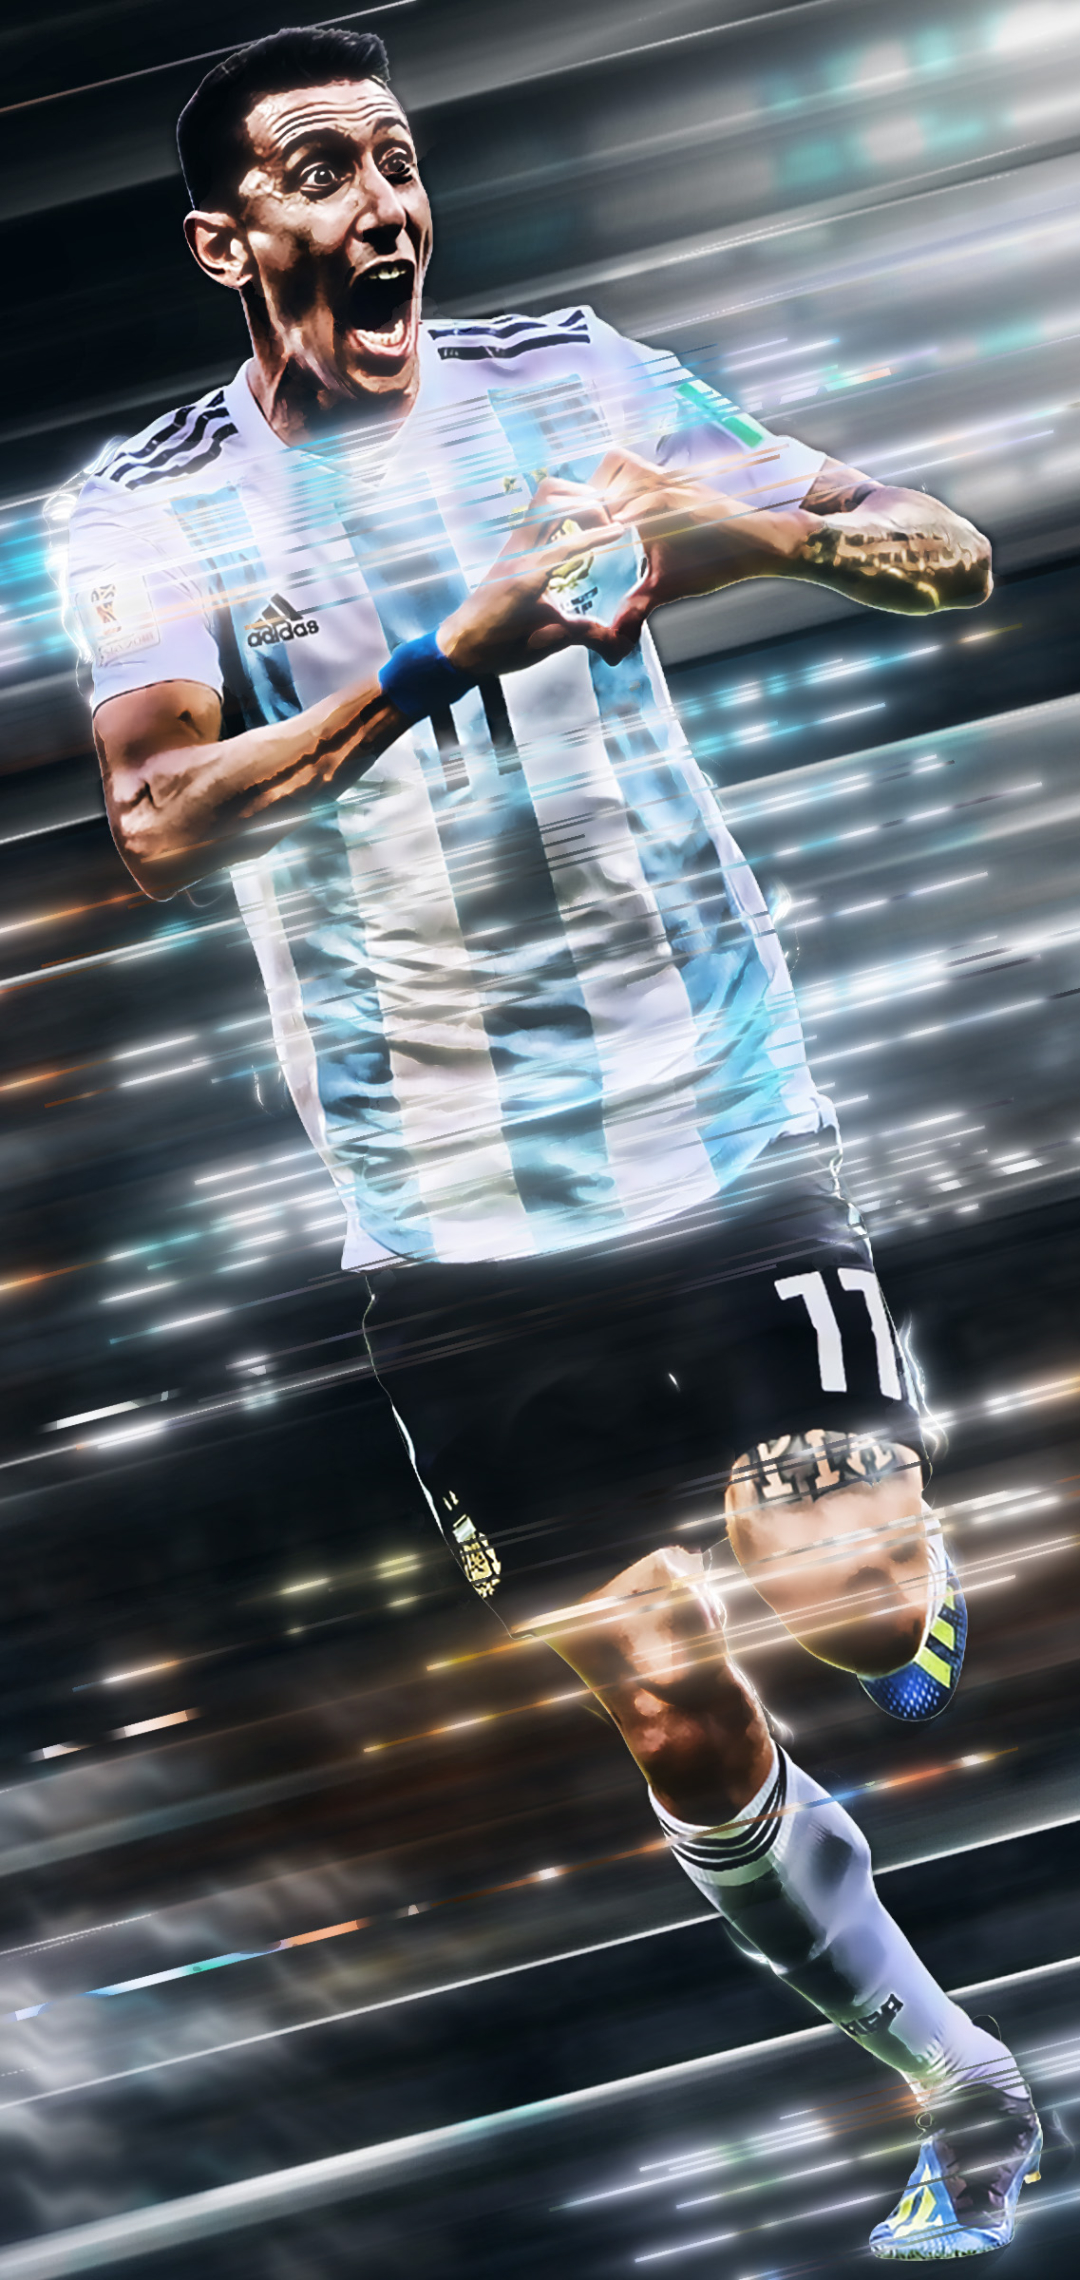 無料モバイル壁紙スポーツ, サッカー, サッカー アルゼンチン代表, アンヘル・ディ・マリアをダウンロードします。